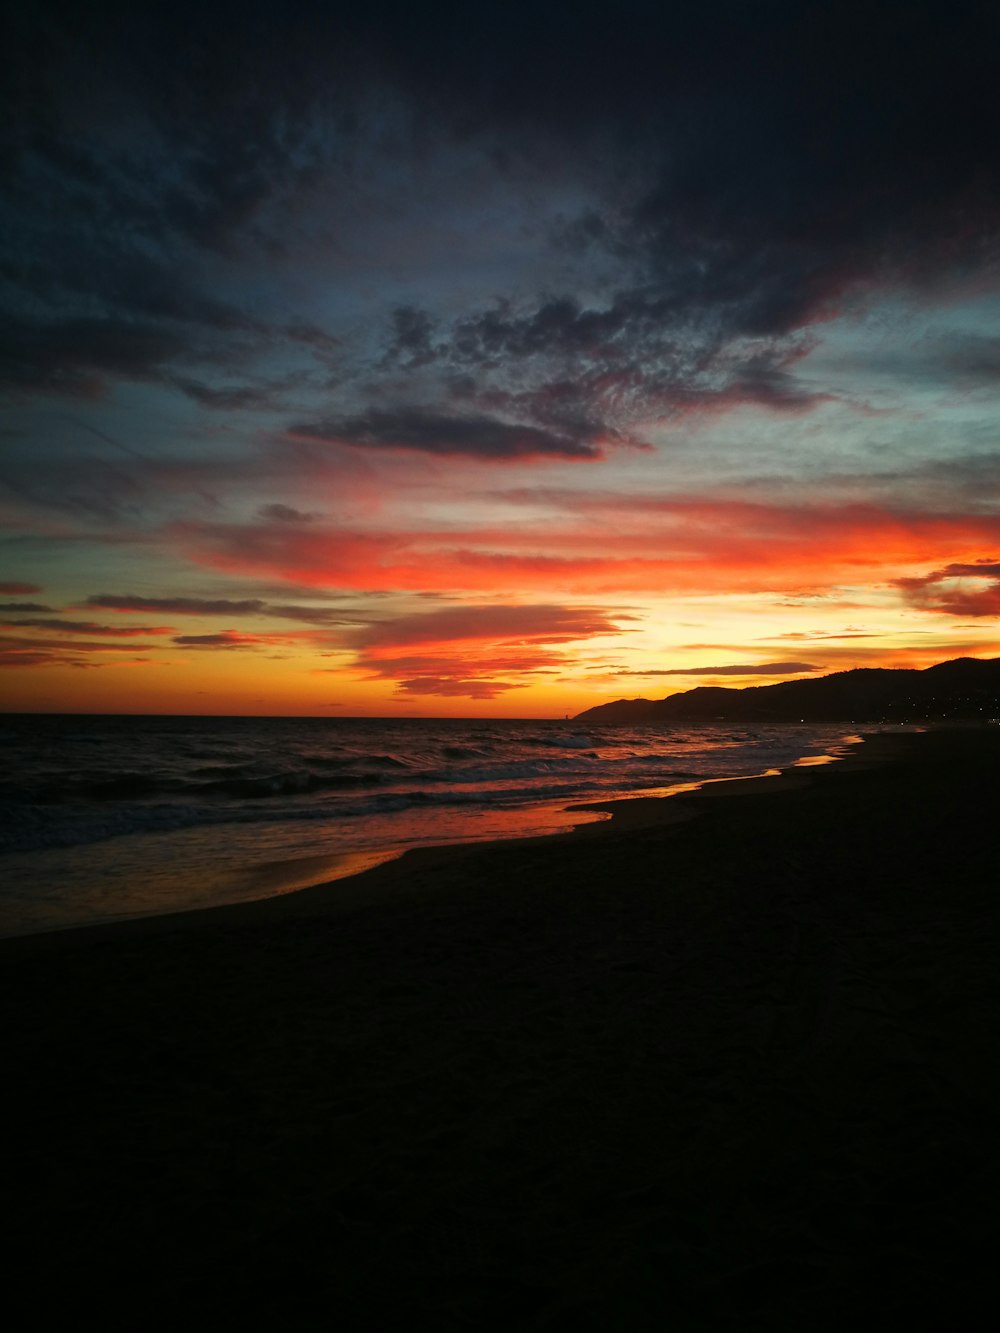 seashore taken during sunset